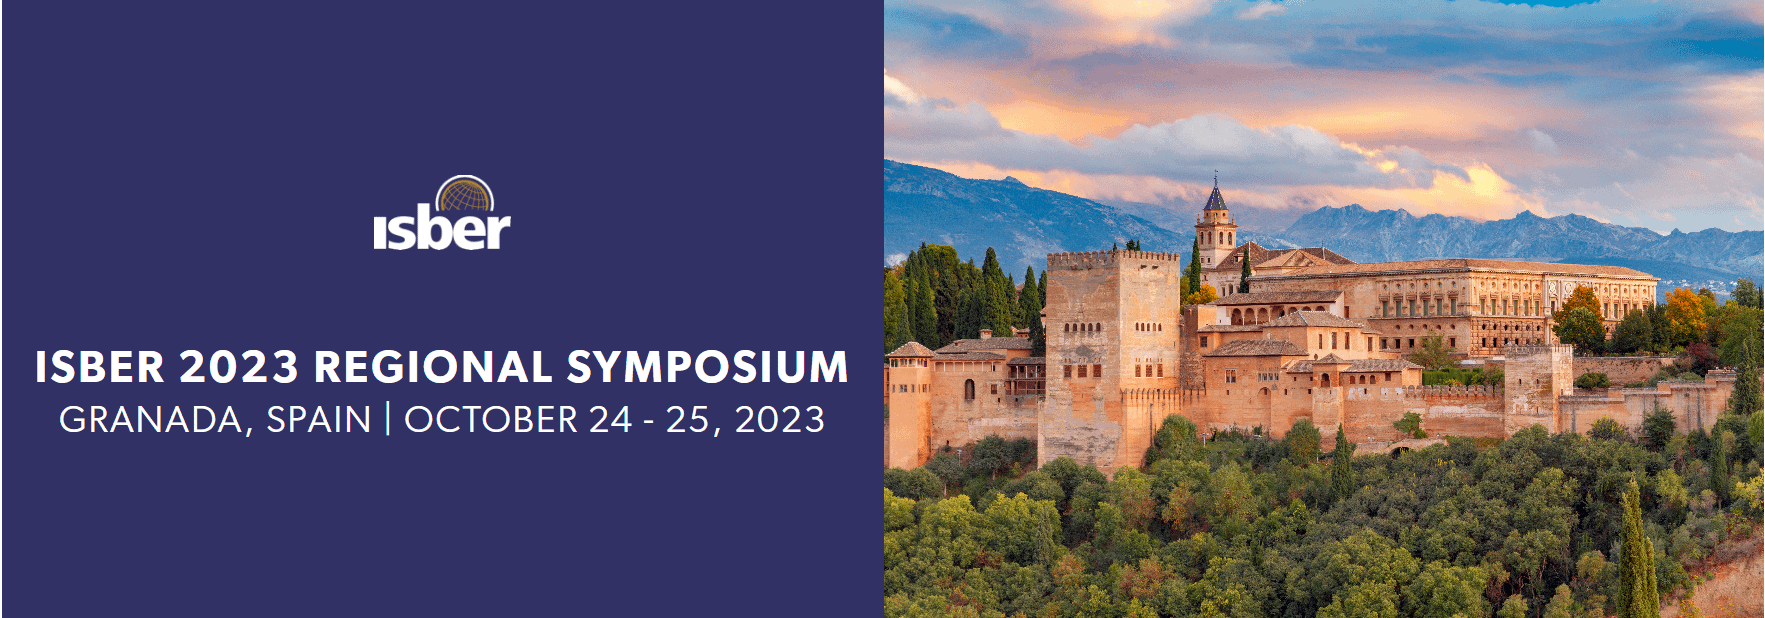 ISBER 2023 Regional Symposium